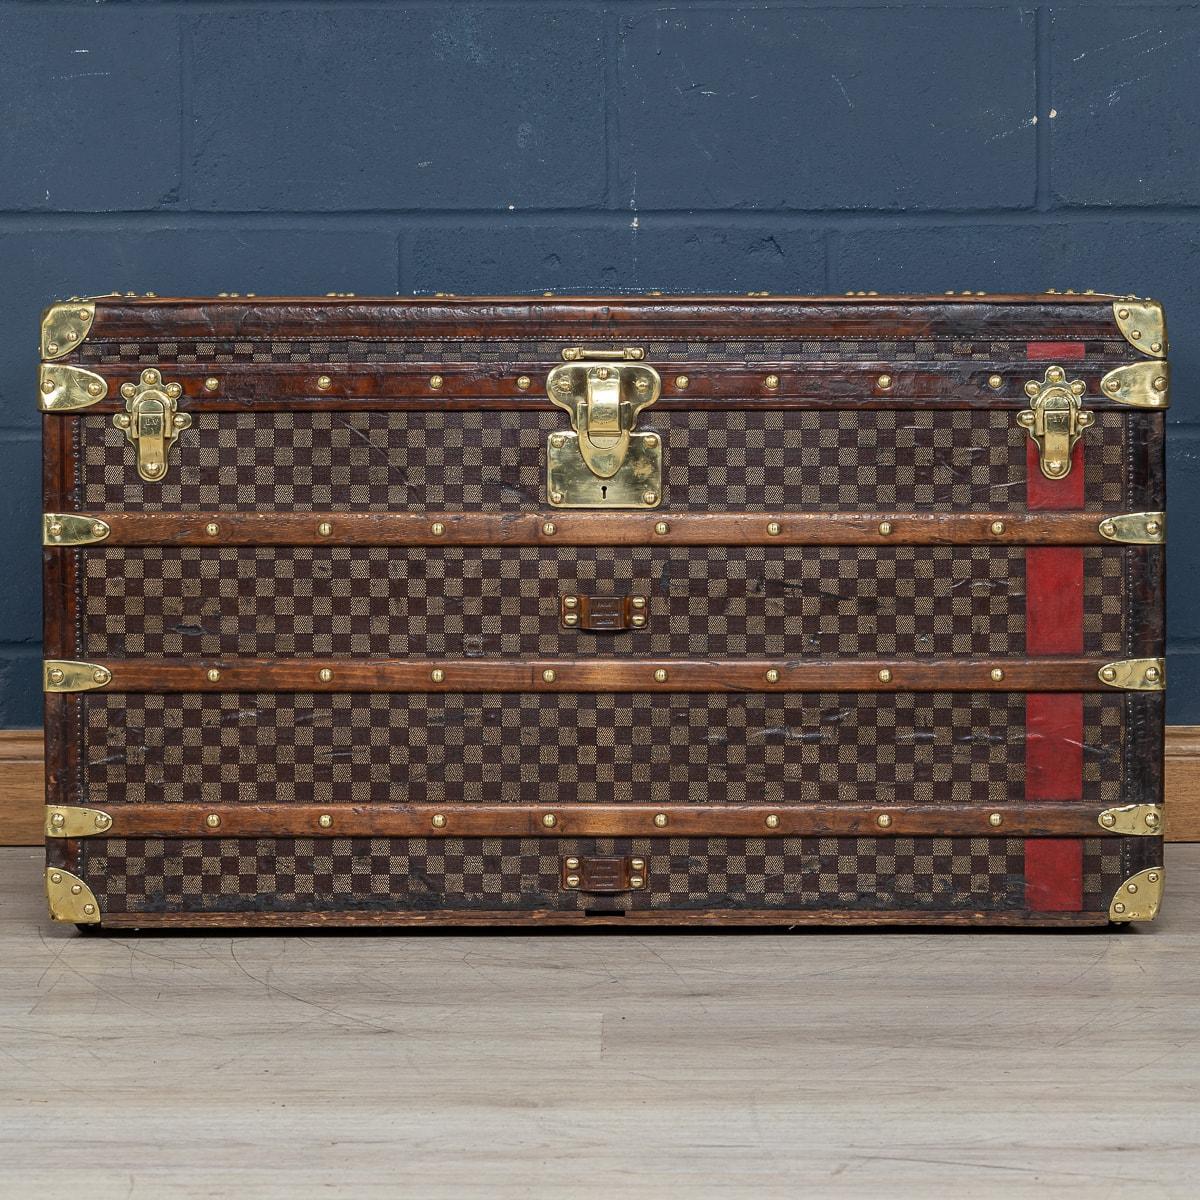 Einer der selteneren Louis Vuitton-Koffer, die angeboten werden, ist mit dem weltberühmten Damier-Stoff (Schachbrettmuster) bezogen. Er stammt aus der Zeit um 1900 und ist ein wunderbares Beispiel für diese Art von Koffern. Mit seiner